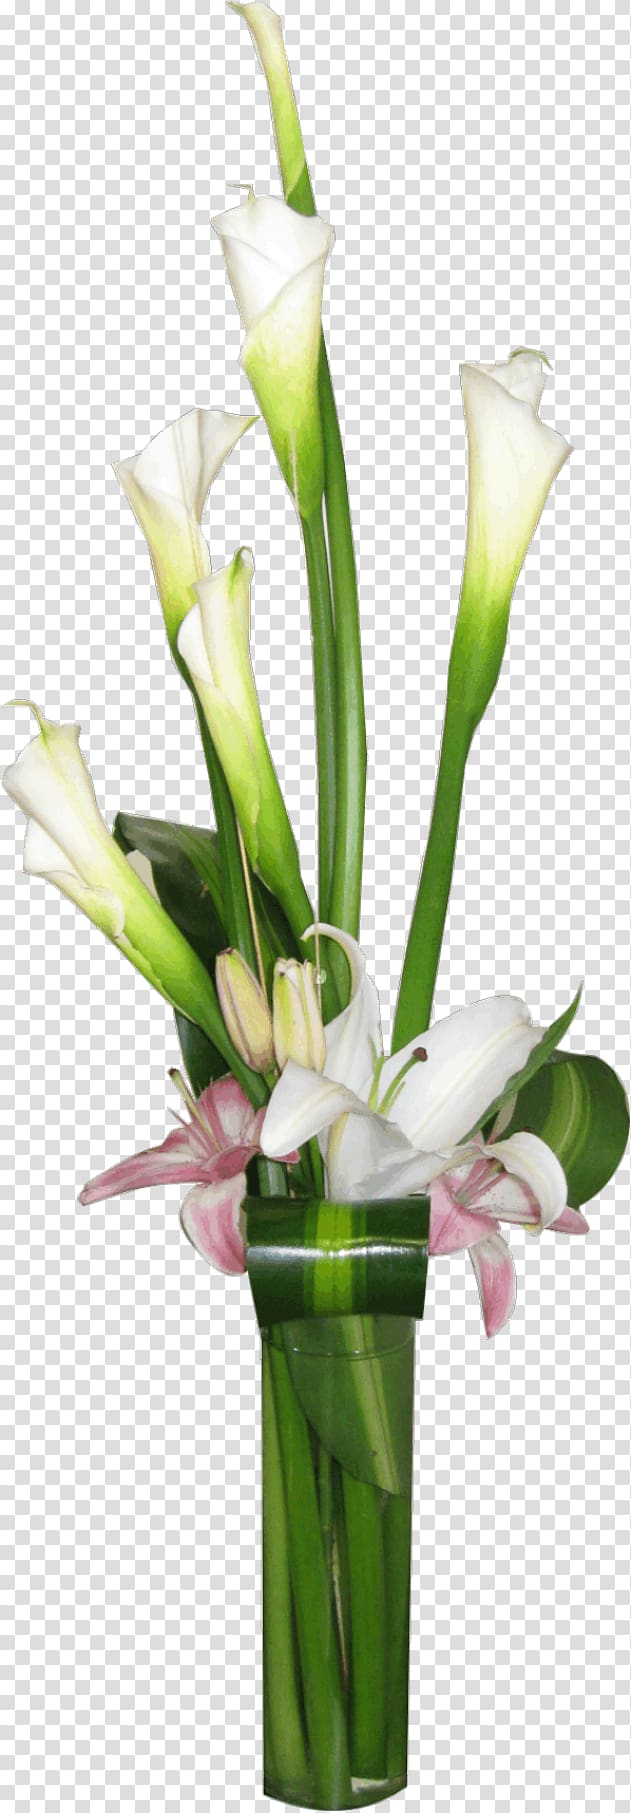 Floral design Cut flowers Vase Flower bouquet, cylinder vase centerpieces transparent background PNG clipart